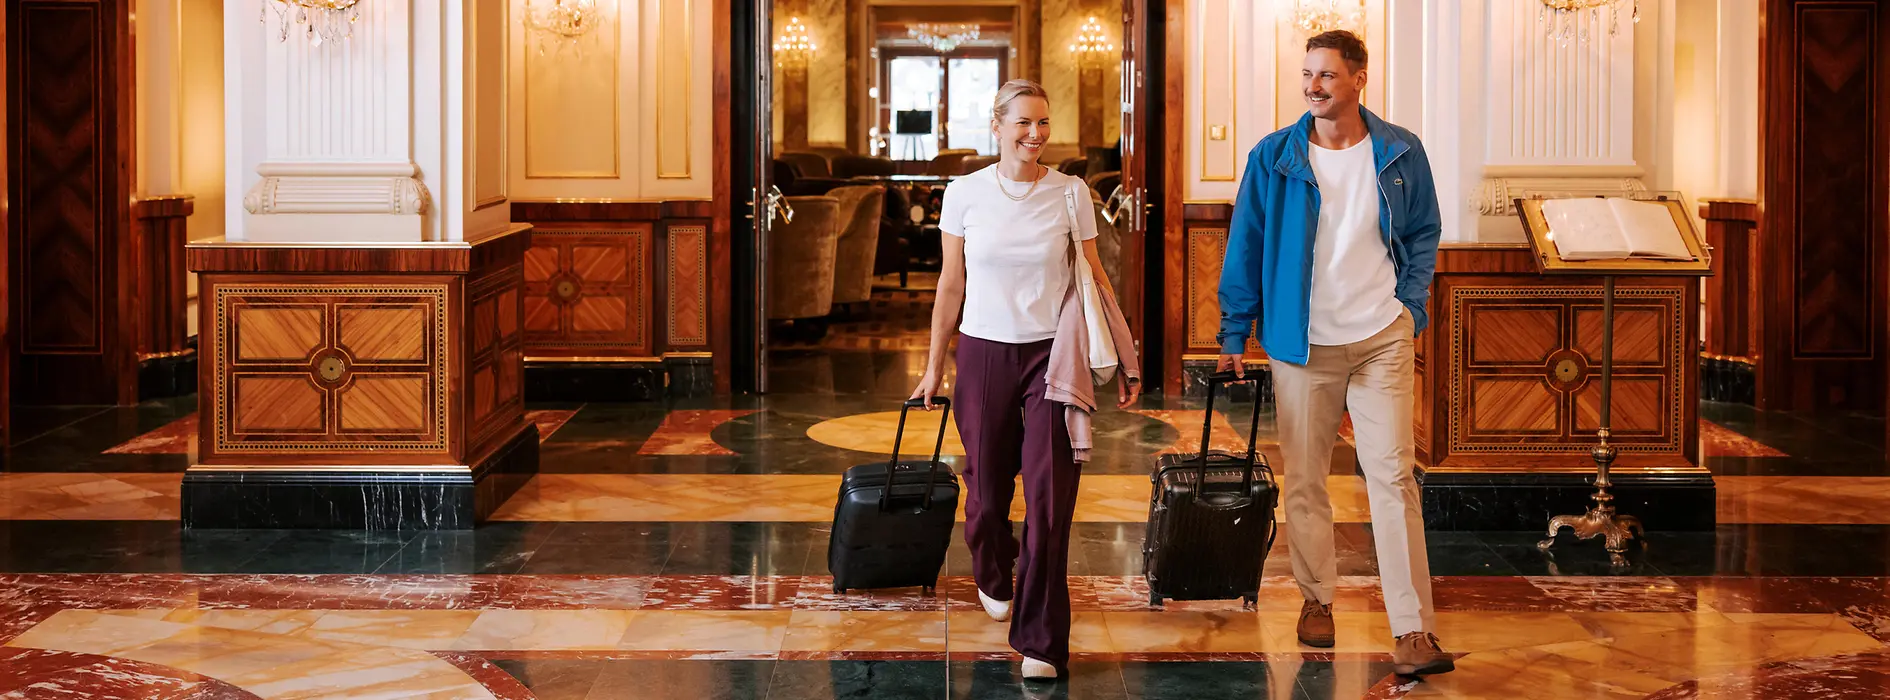 Две женщины с багажом в венском отеле